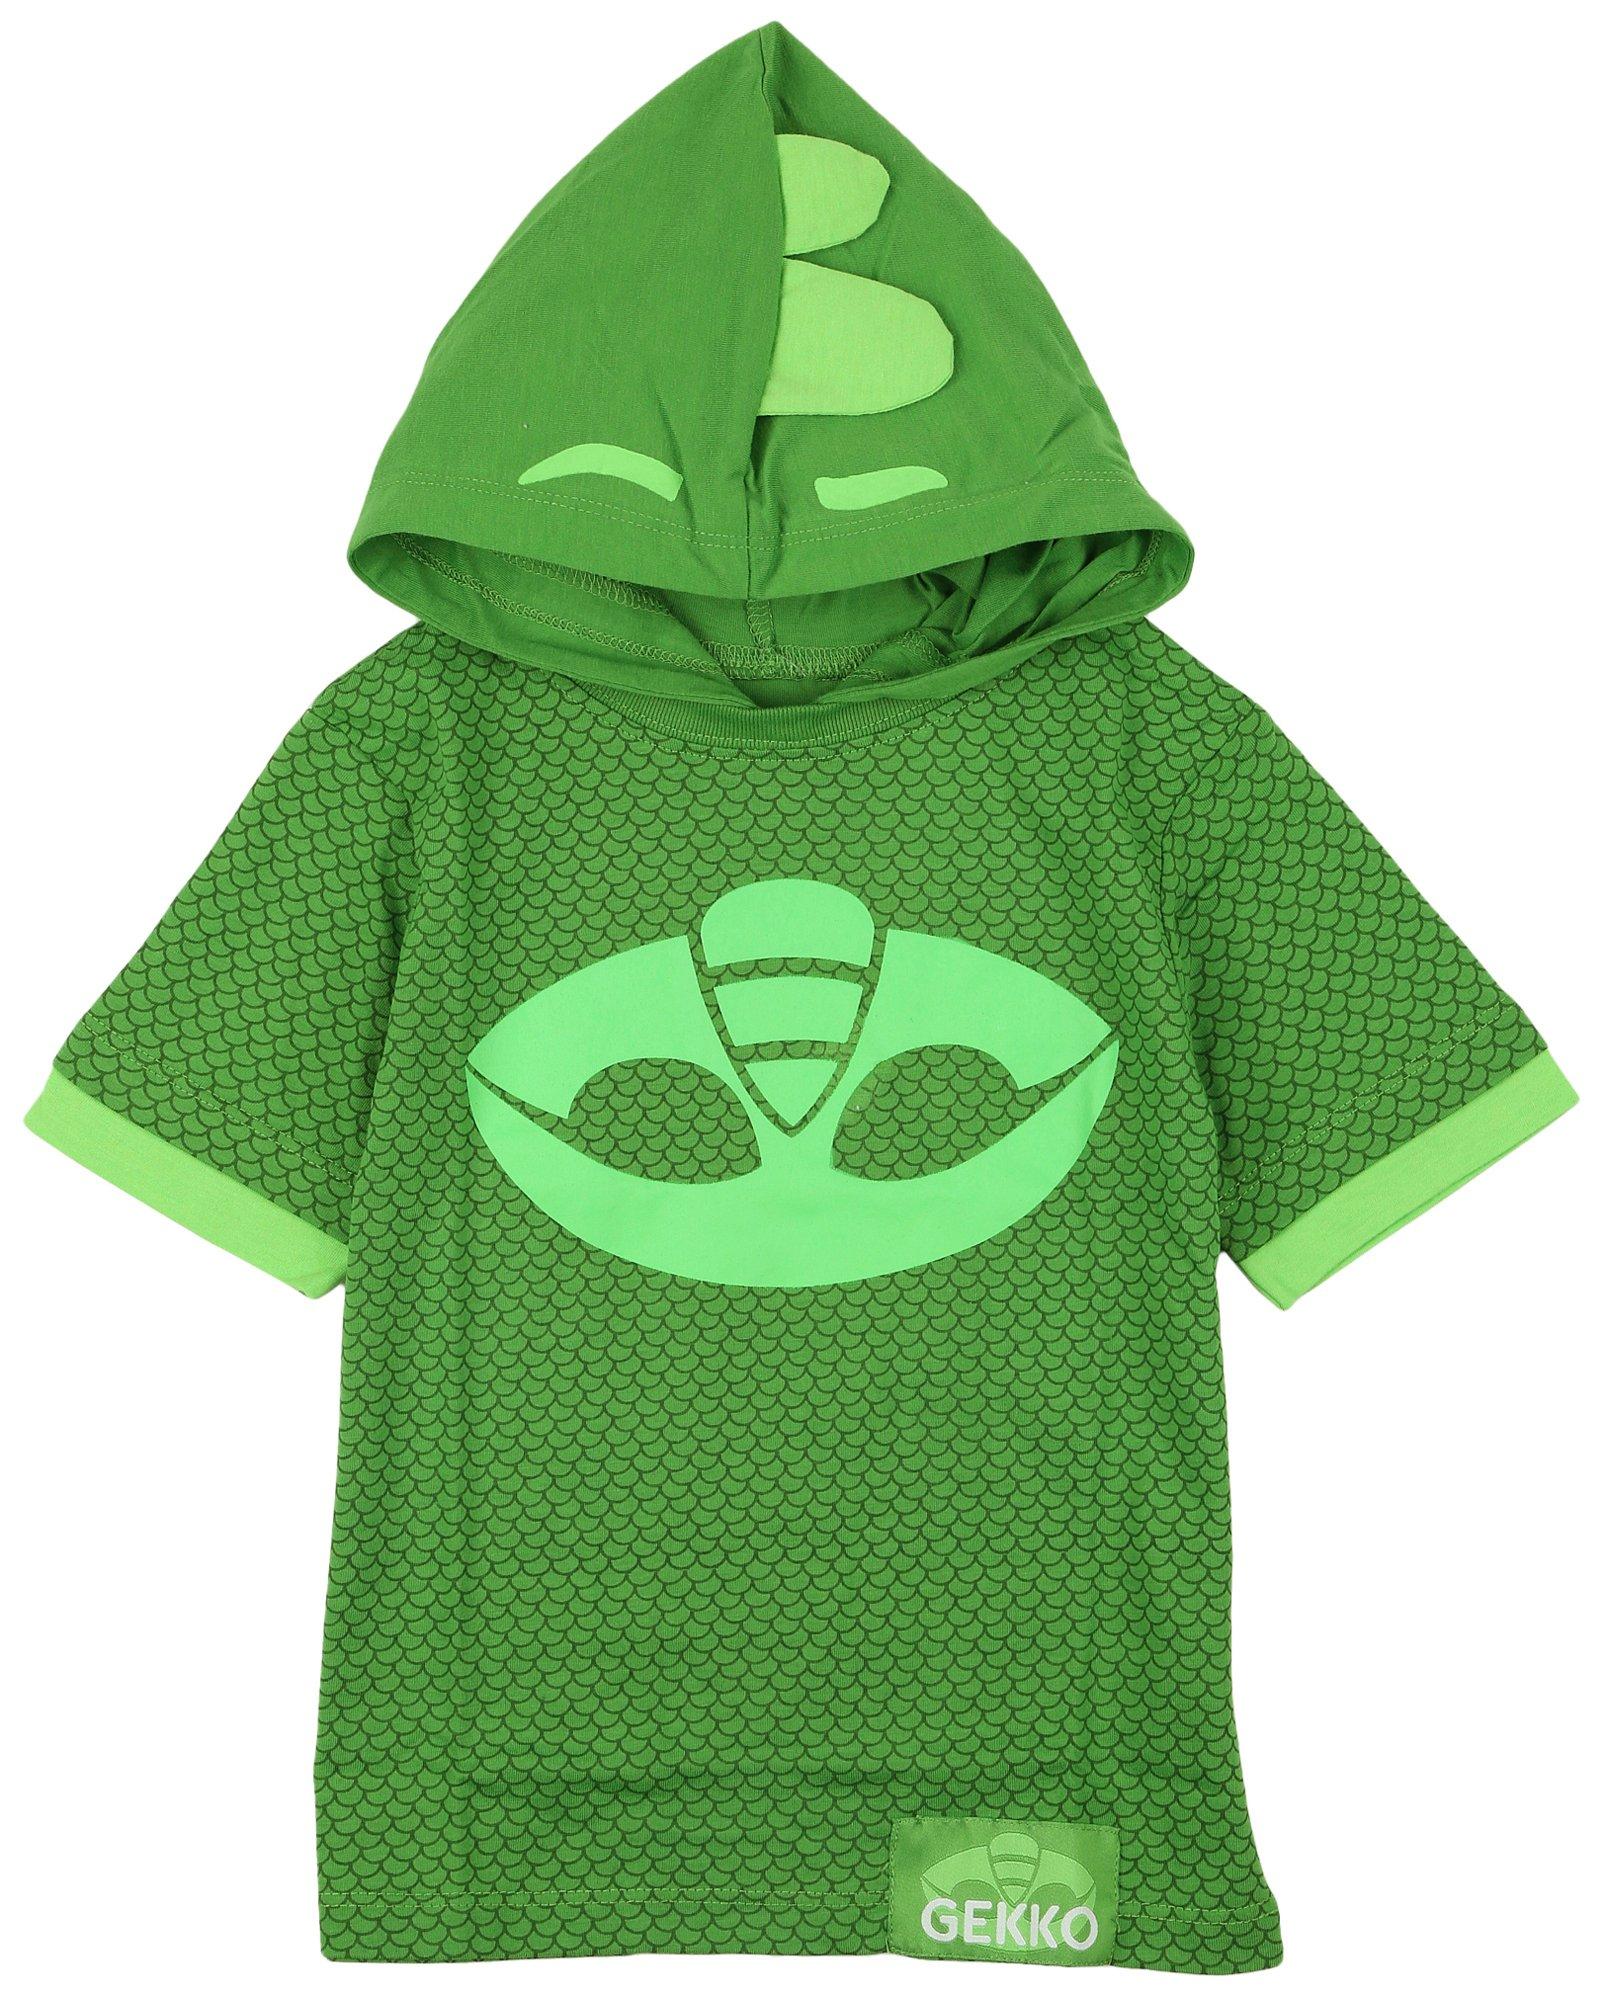 PJ Mask Toddler Boys Gecko Hoodie Short Sleeve Top